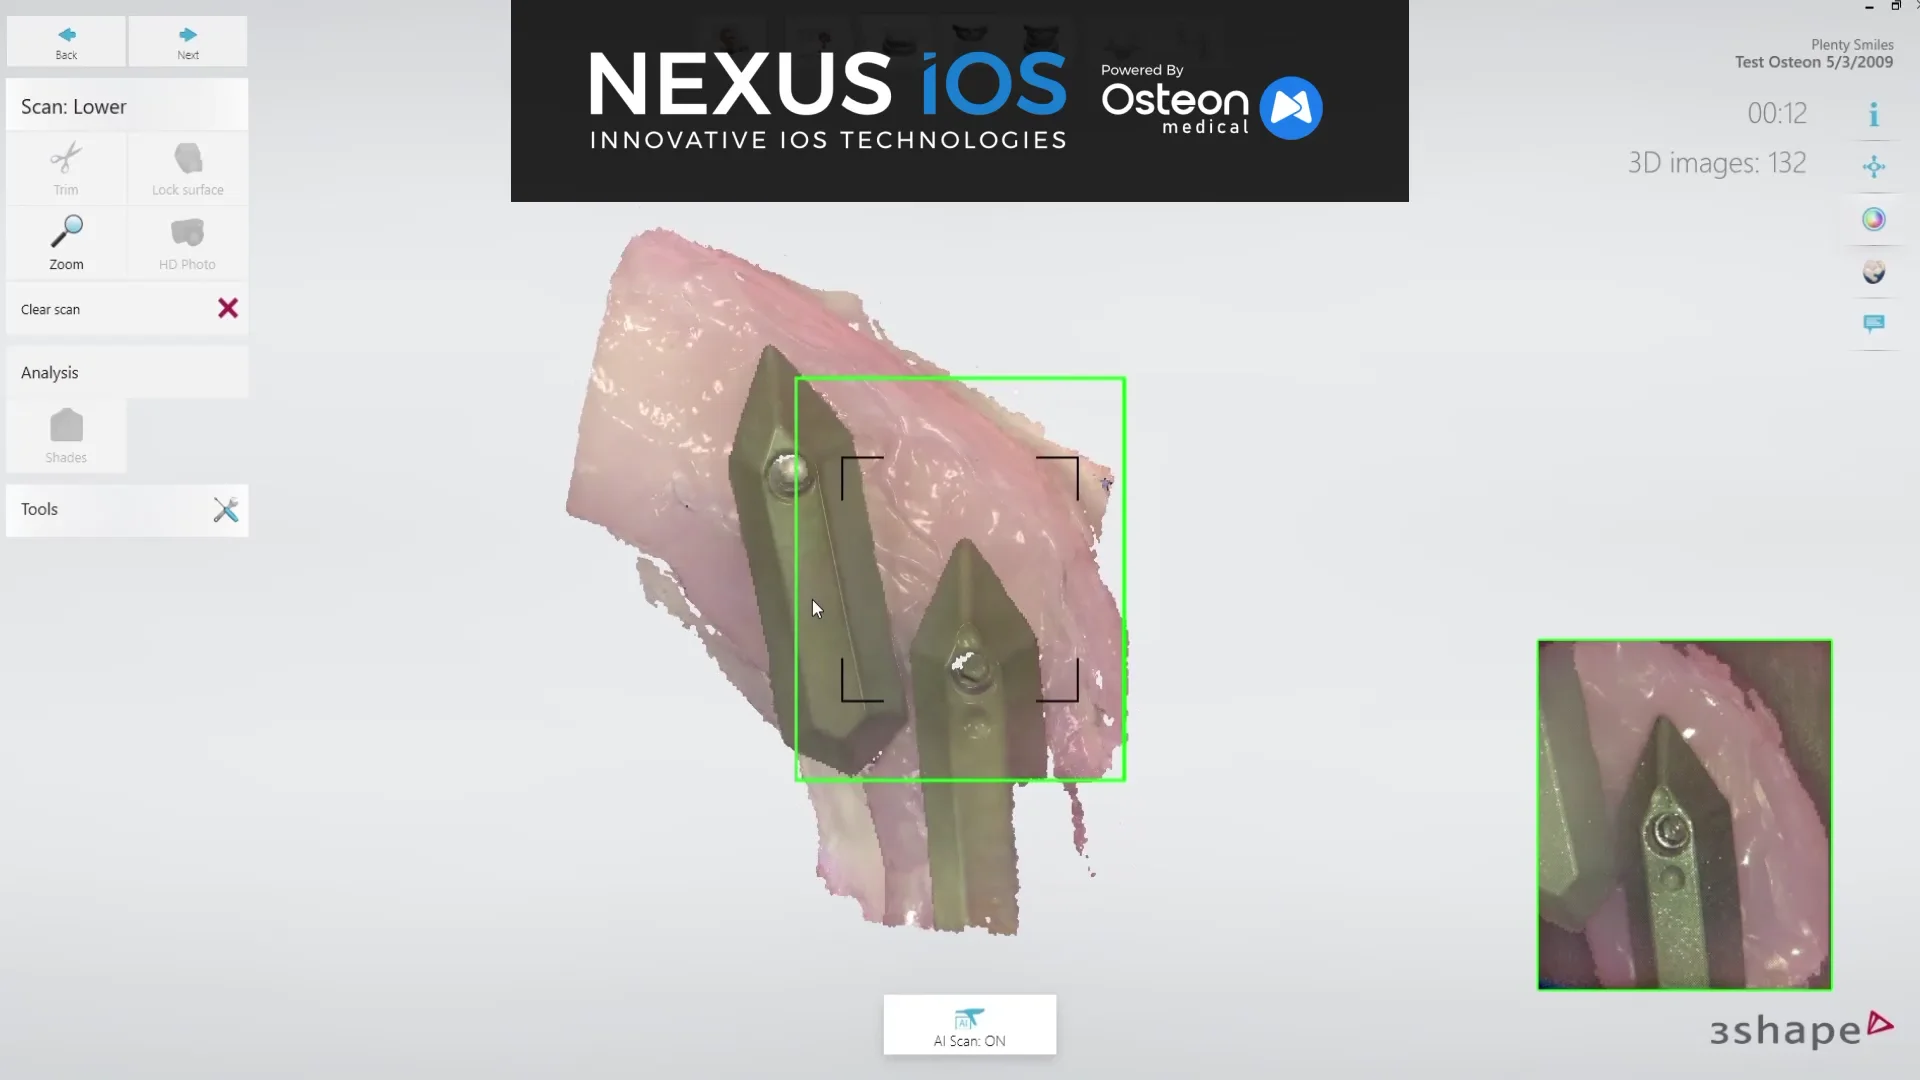 Nexus iOS Scan Example on Vimeo